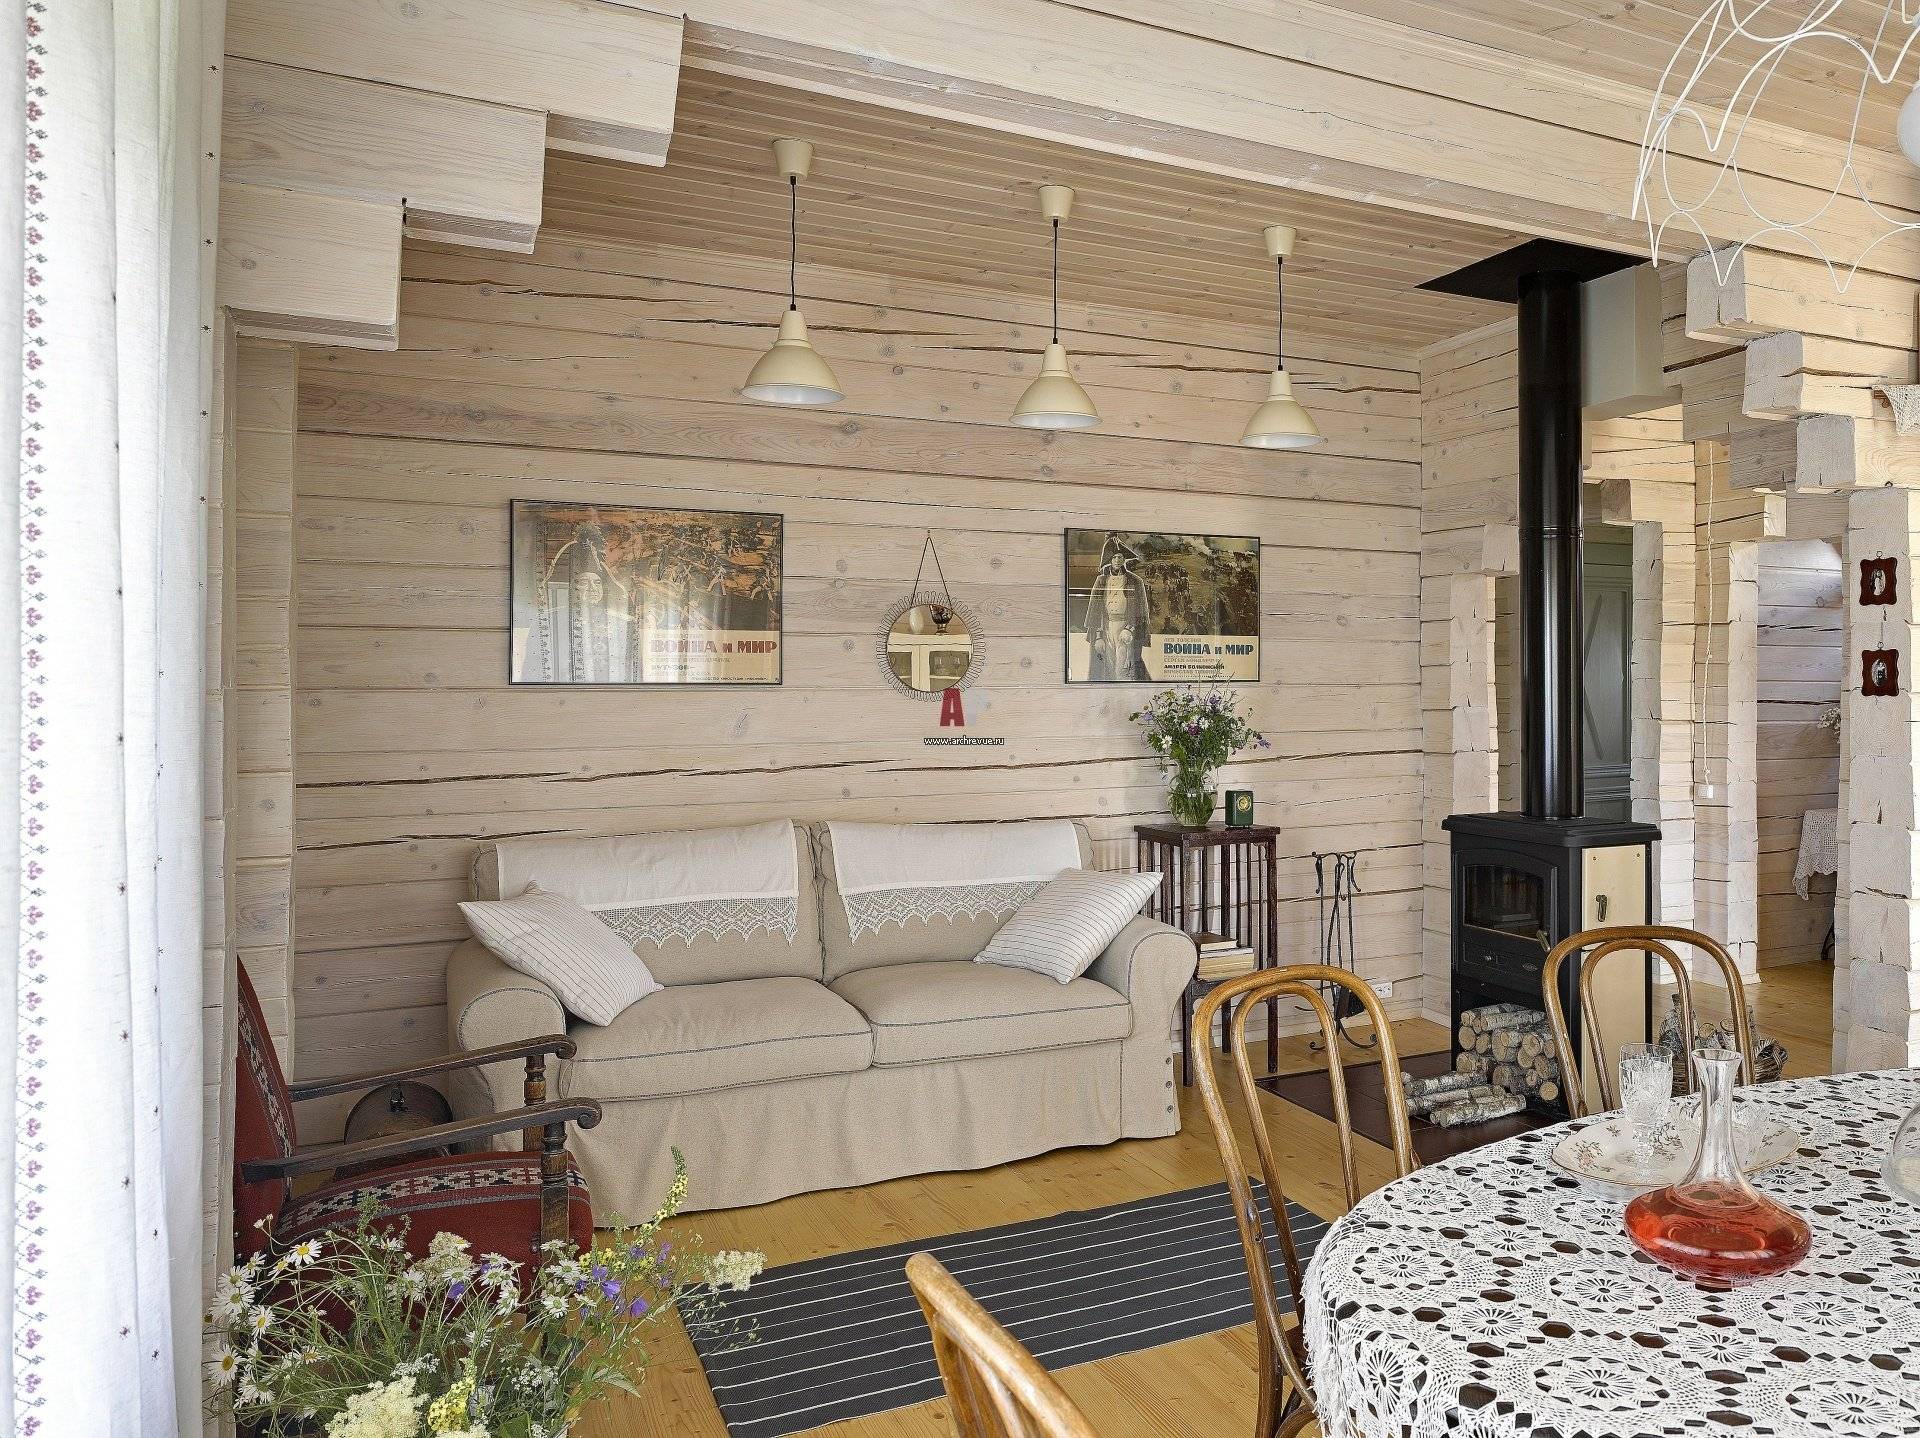 Внутренний интерьер дачного дома: маленький садовый домик эконом класса, дизайн идеи, оформление в деревенском стиле своими руками, фото.